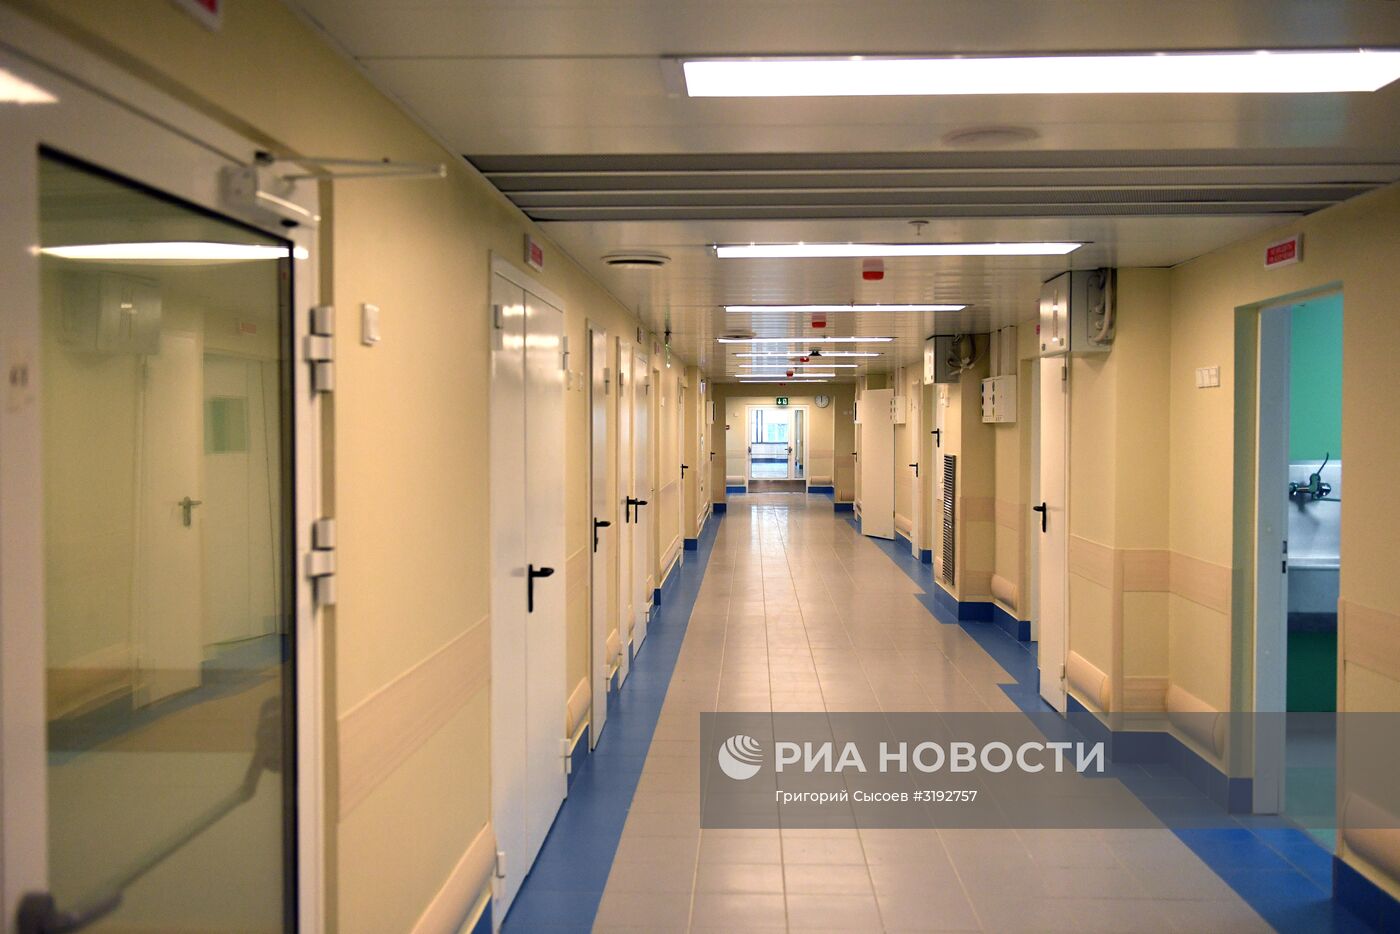 Мэр Москвы Сергей Собянин посетил новый корпус Морозовской больницы